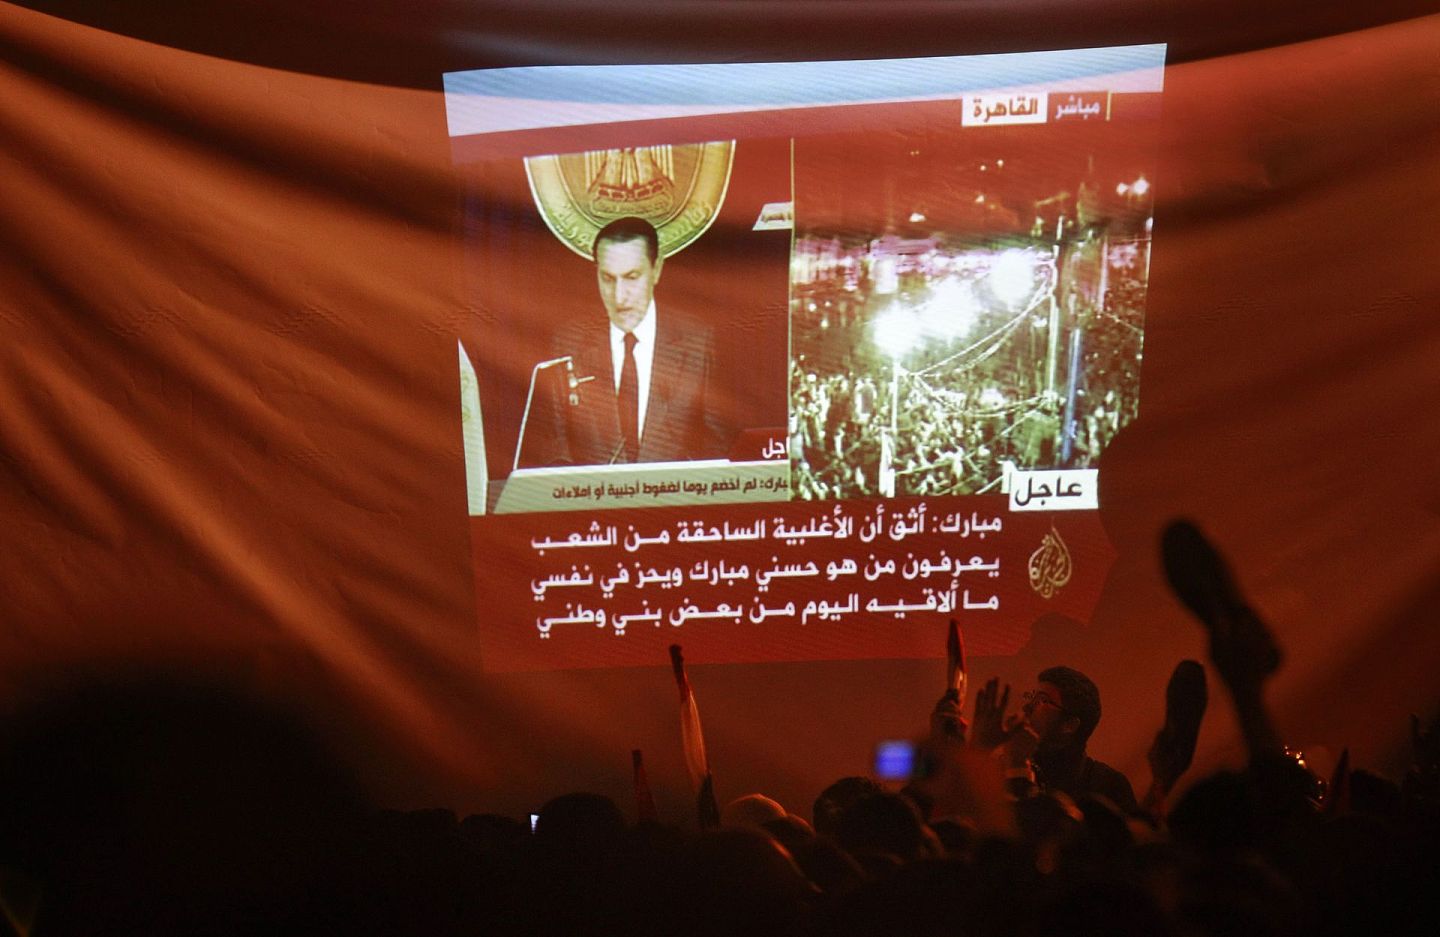 2011年1月25日开始的开罗广场革命，促成半个月后强人领袖穆巴拉克下台。随后穆巴拉克被判入狱，后来获释。最后在2020年2月25日，穆巴拉克因病去世，终年91岁。图为穆巴拉克当年下台前发表电视讲话，收看的示威民众高举鞋子，表示对当权者的不满。（美联社）